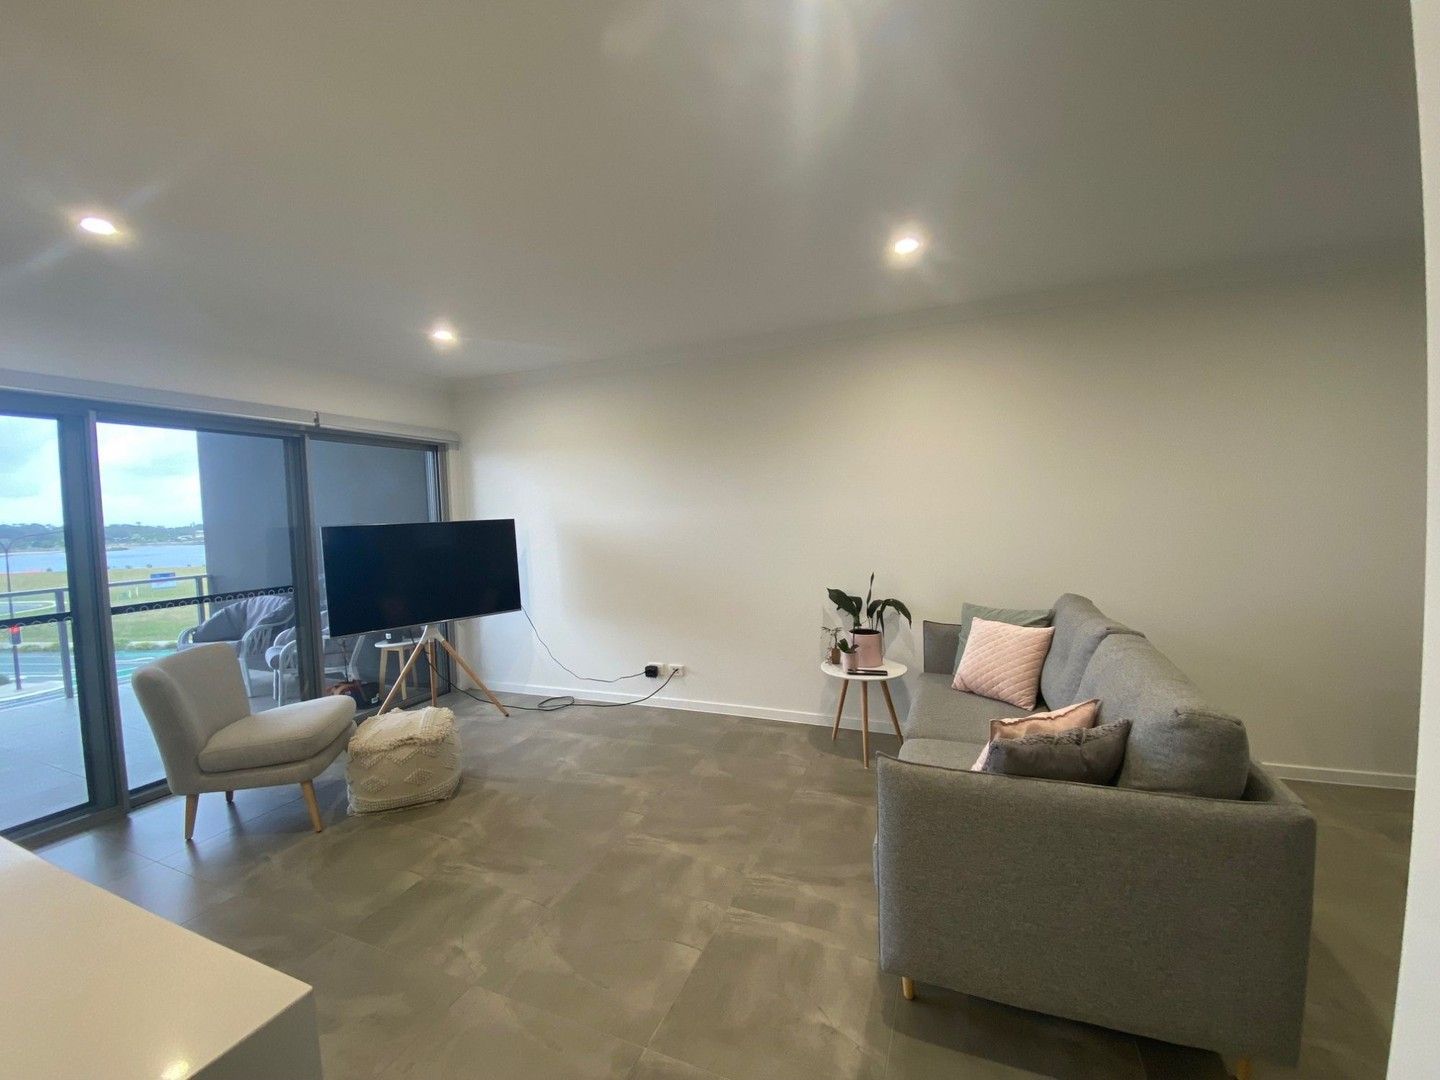 2 bedrooms Apartment / Unit / Flat in  BIRTINYA QLD, 4575